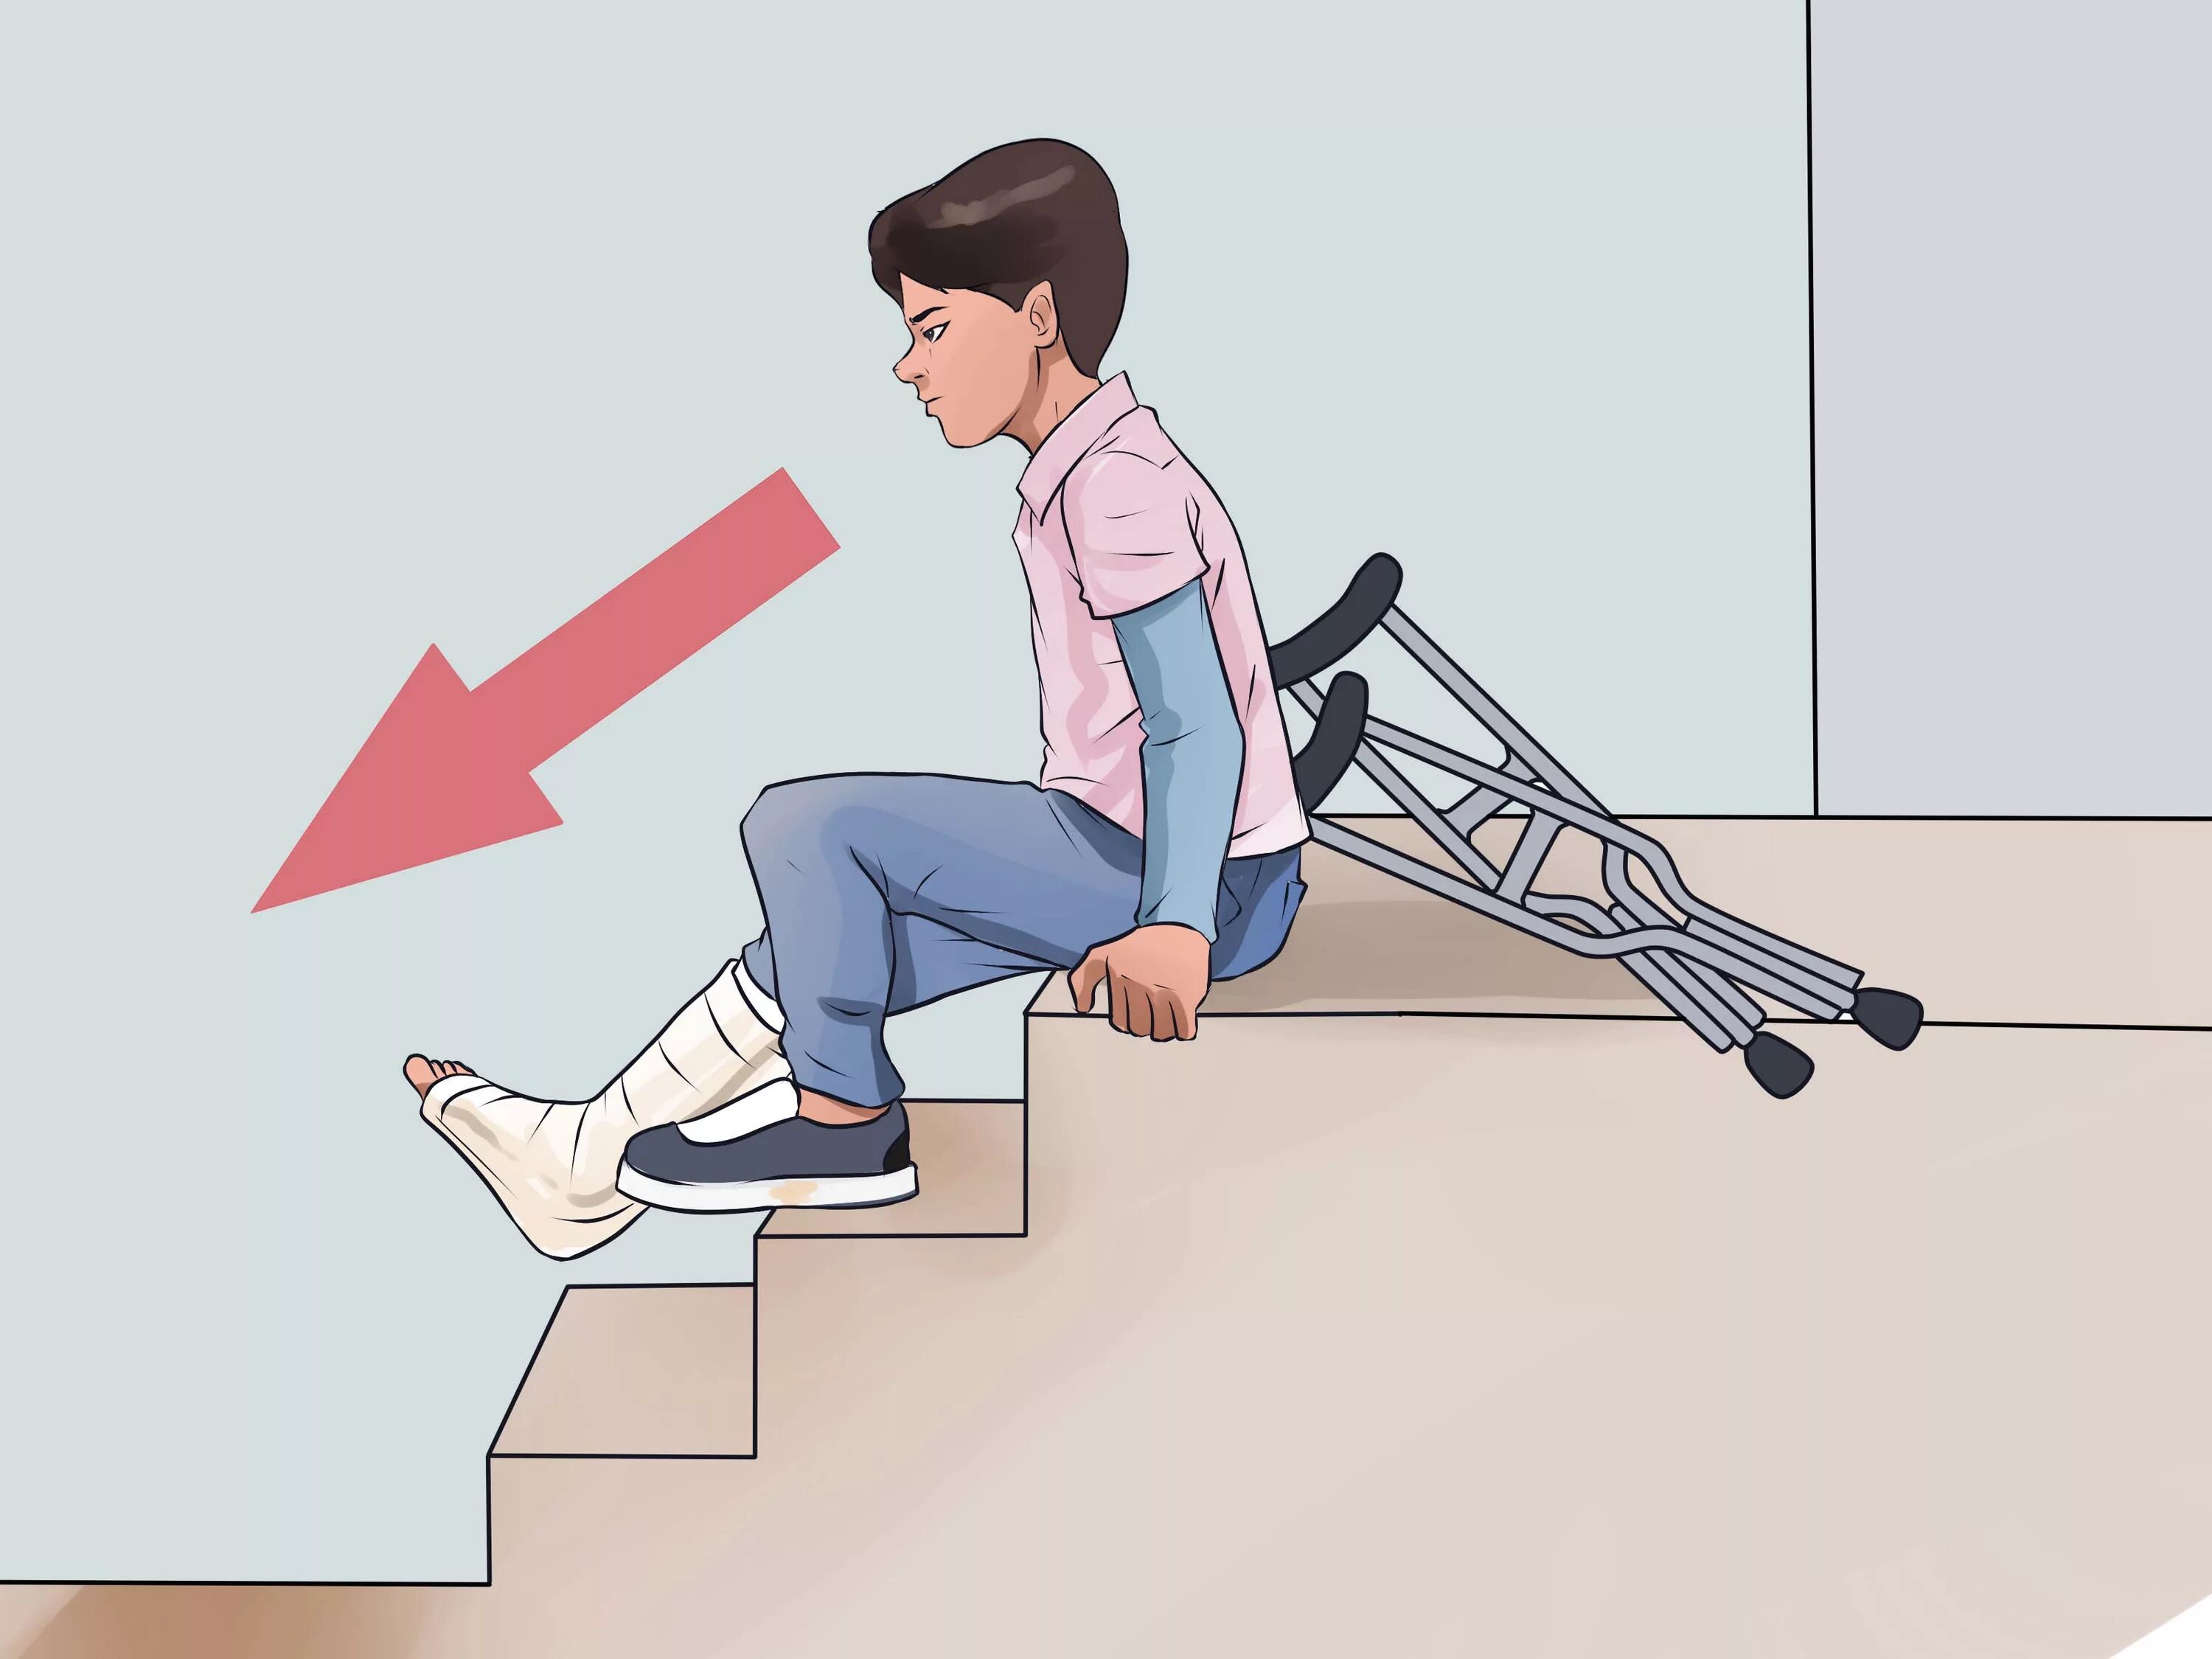 Спуск по лестнице на костылях. Техника хождения на костылях по ступенькам. Ходьба на костылях по лестнице.